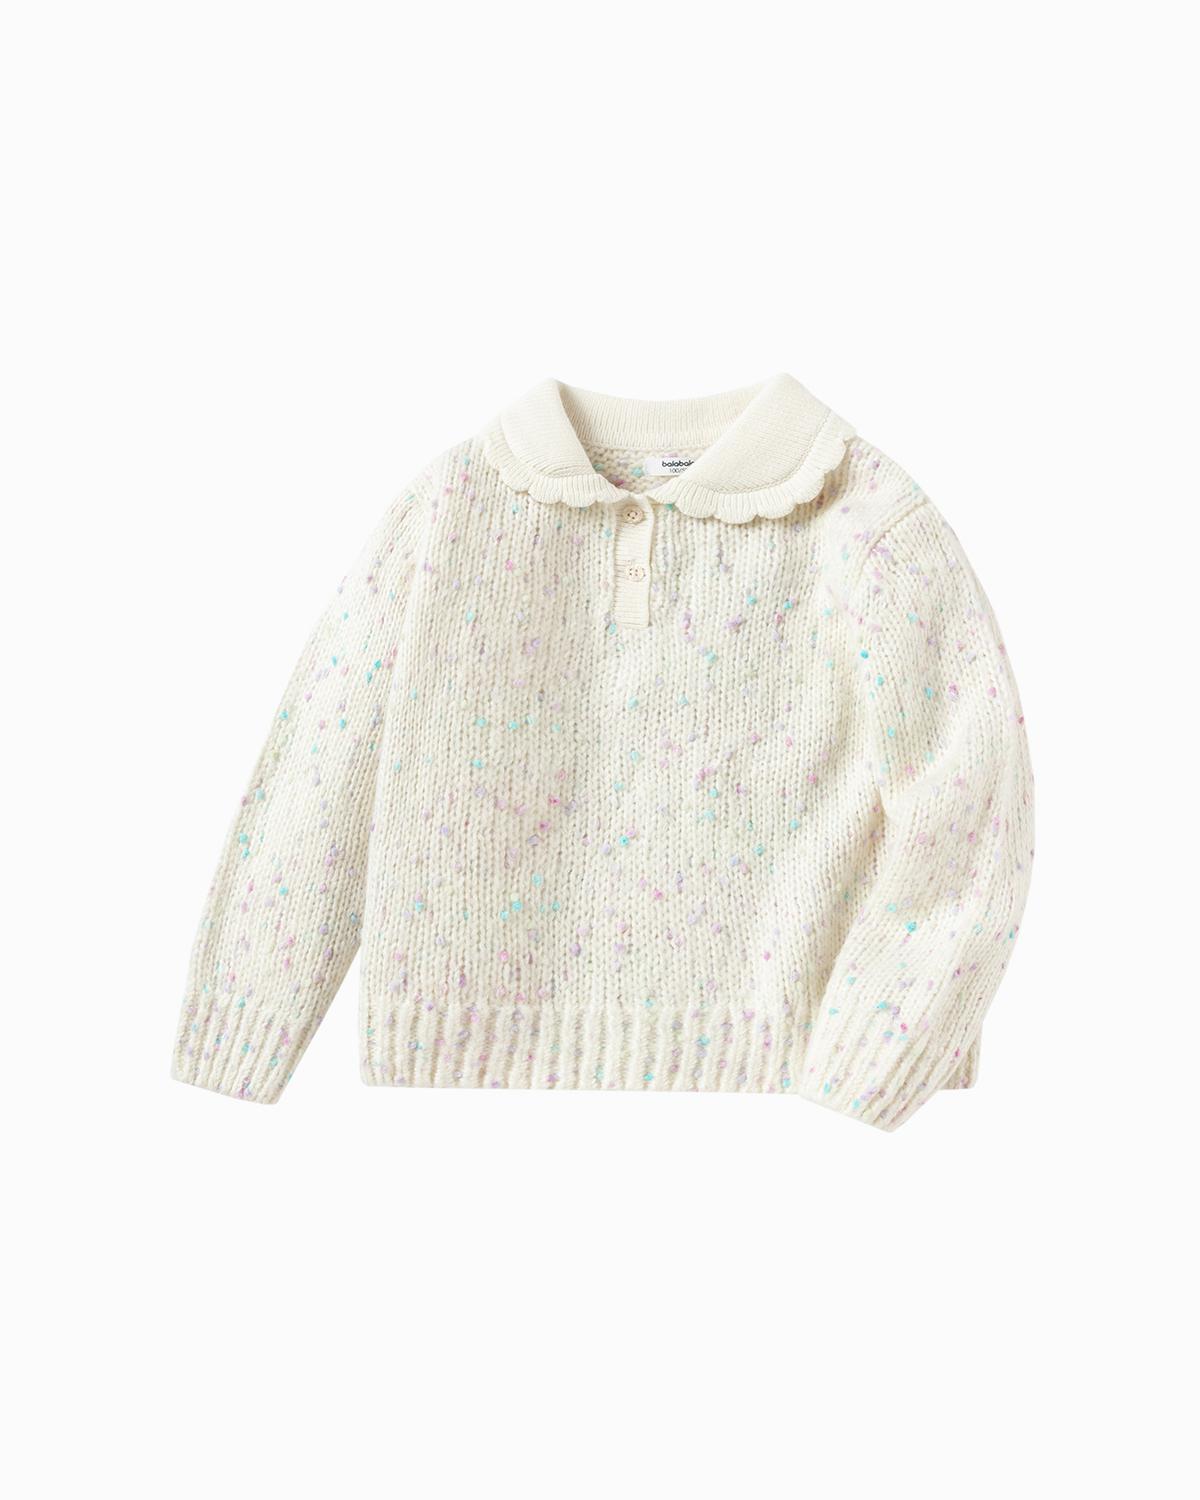 Balabala Toddler Girl White Hue Sweater